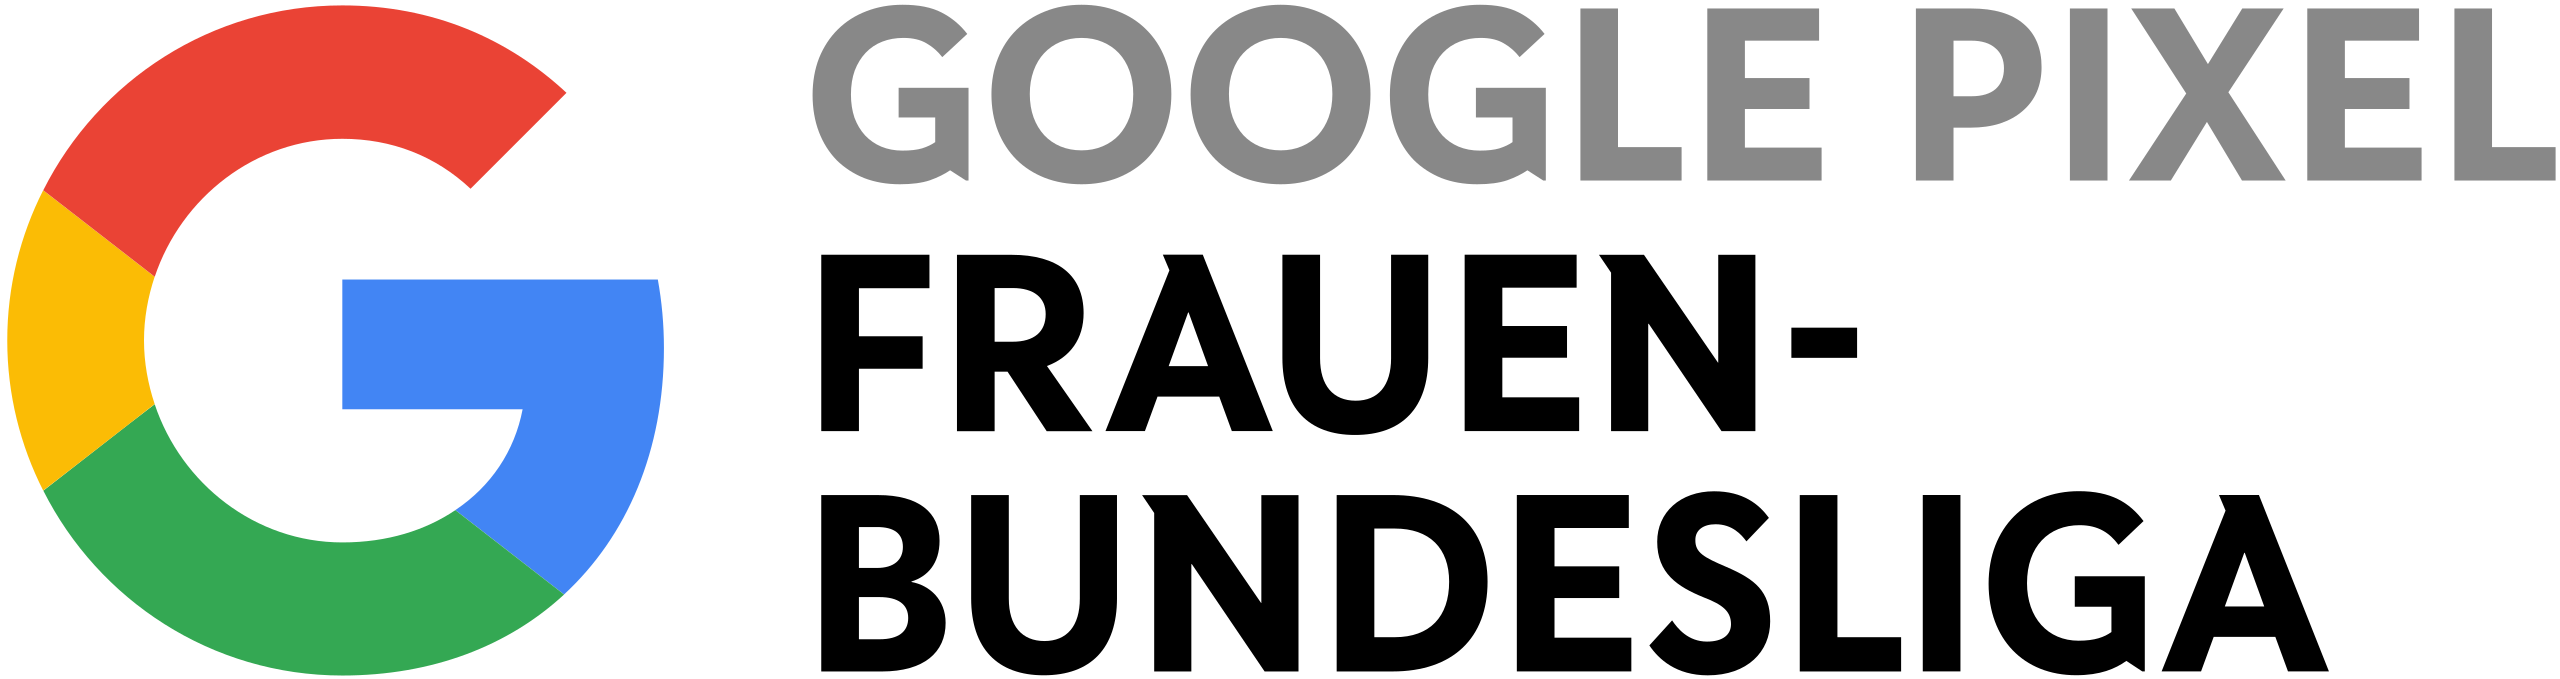 Download Google Pixel Logo in SVG Vector or PNG File Format - Logo.wine